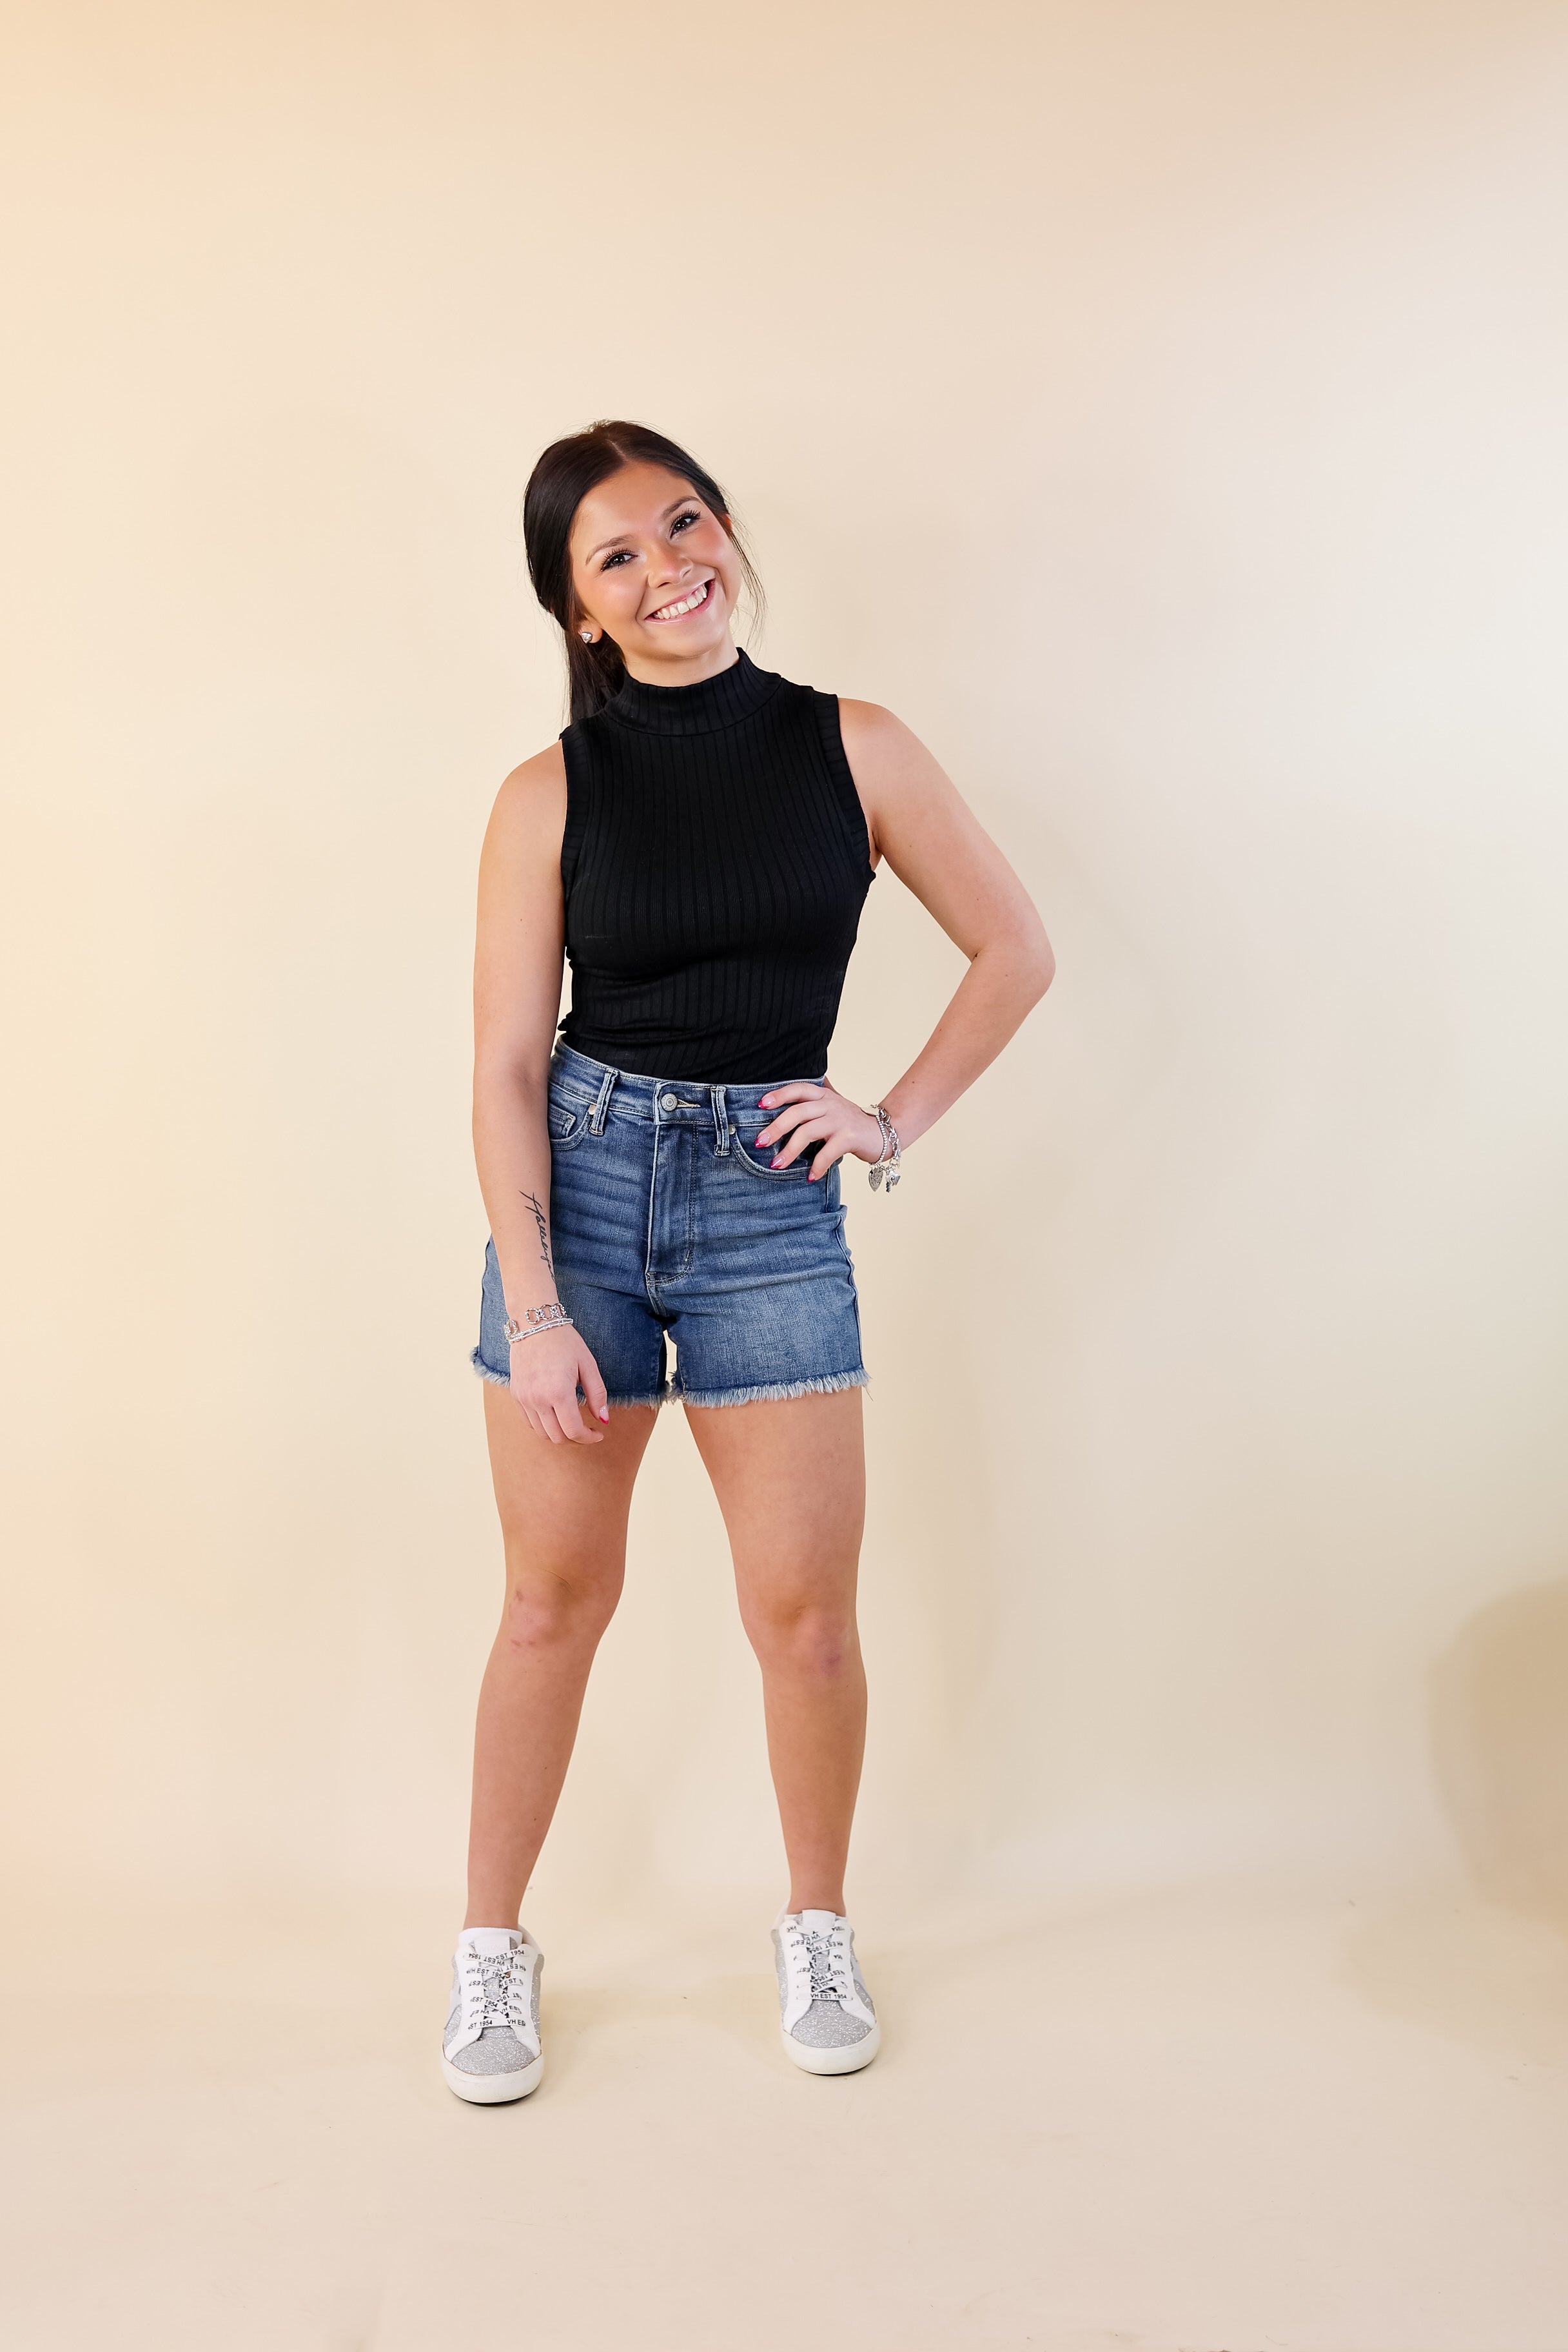 Judy Blue | Sunny Stride Rigid Tummy Control Fray Hem Shorts in Medium Wash - Giddy Up Glamour Boutique